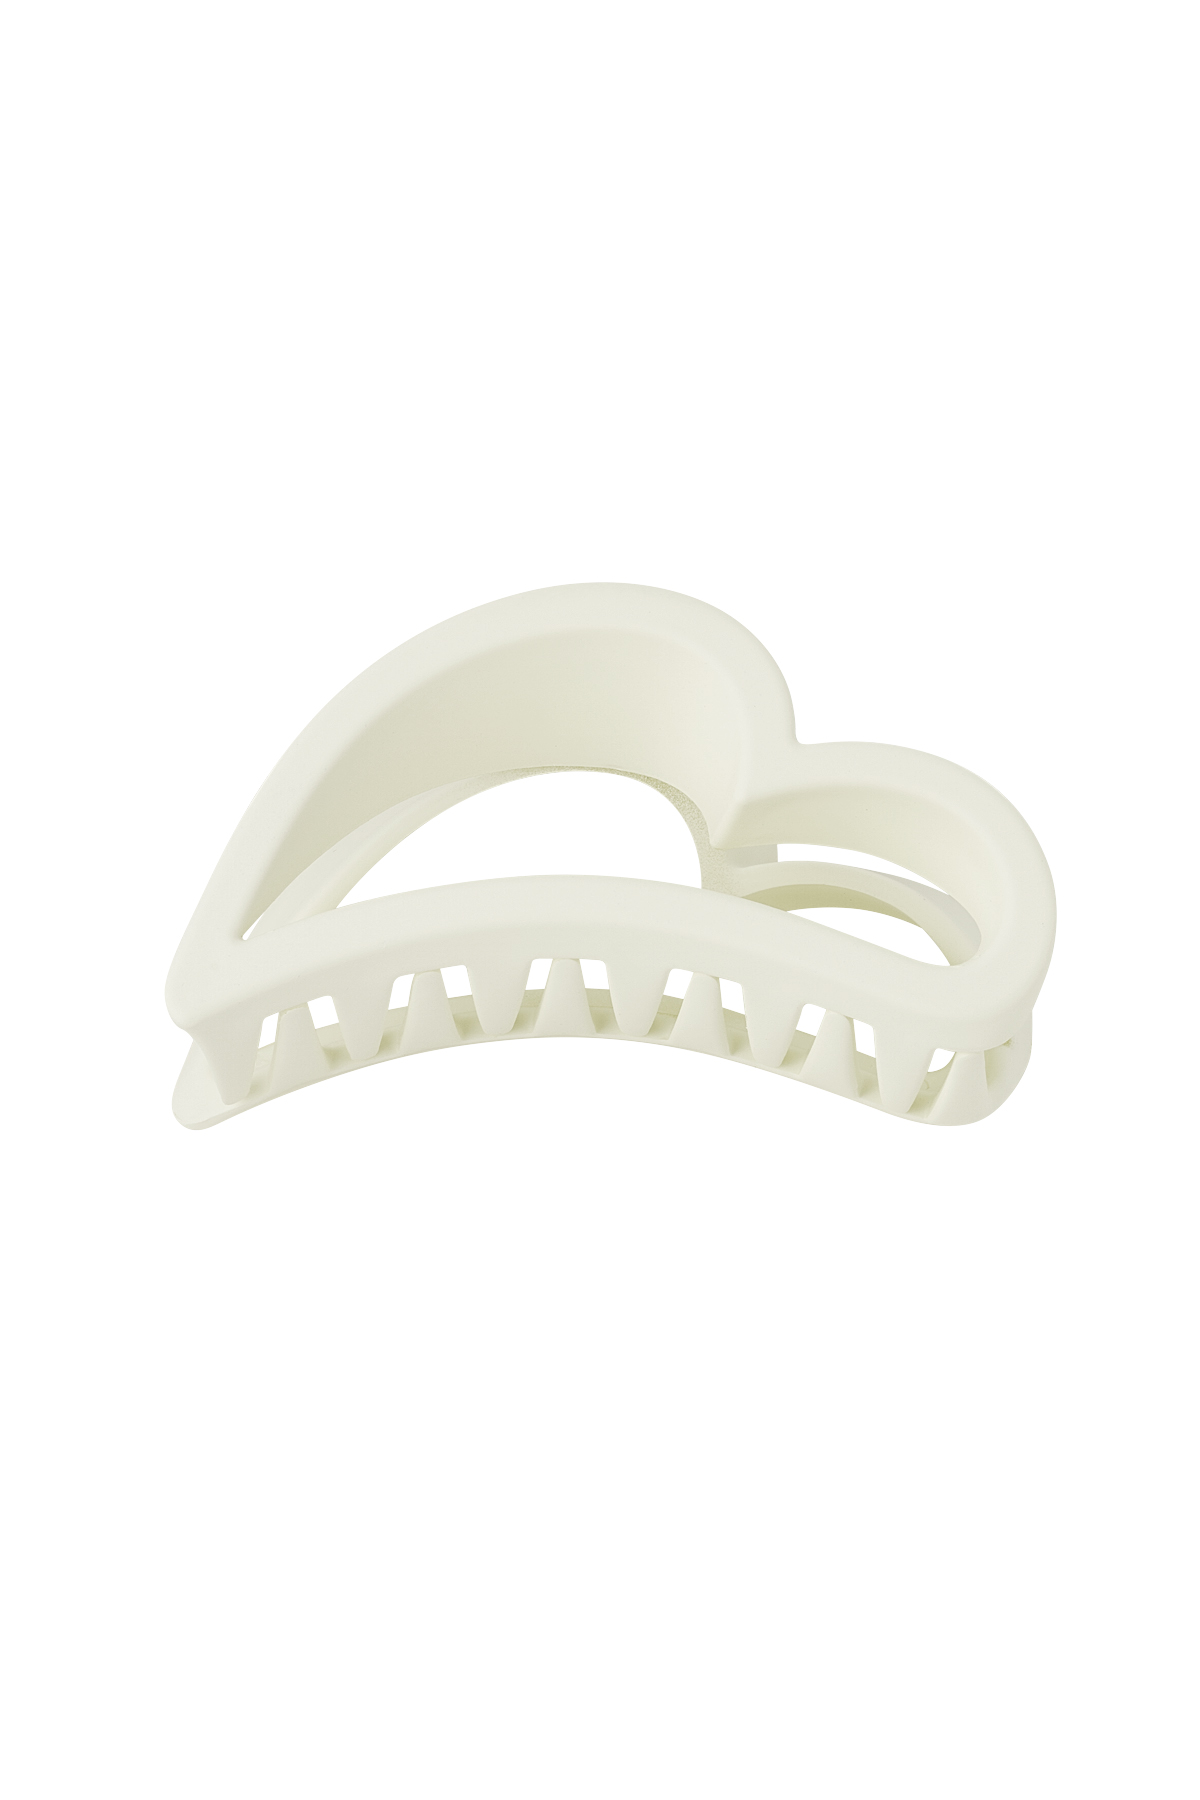 Hair clip wing - cream Plastic 